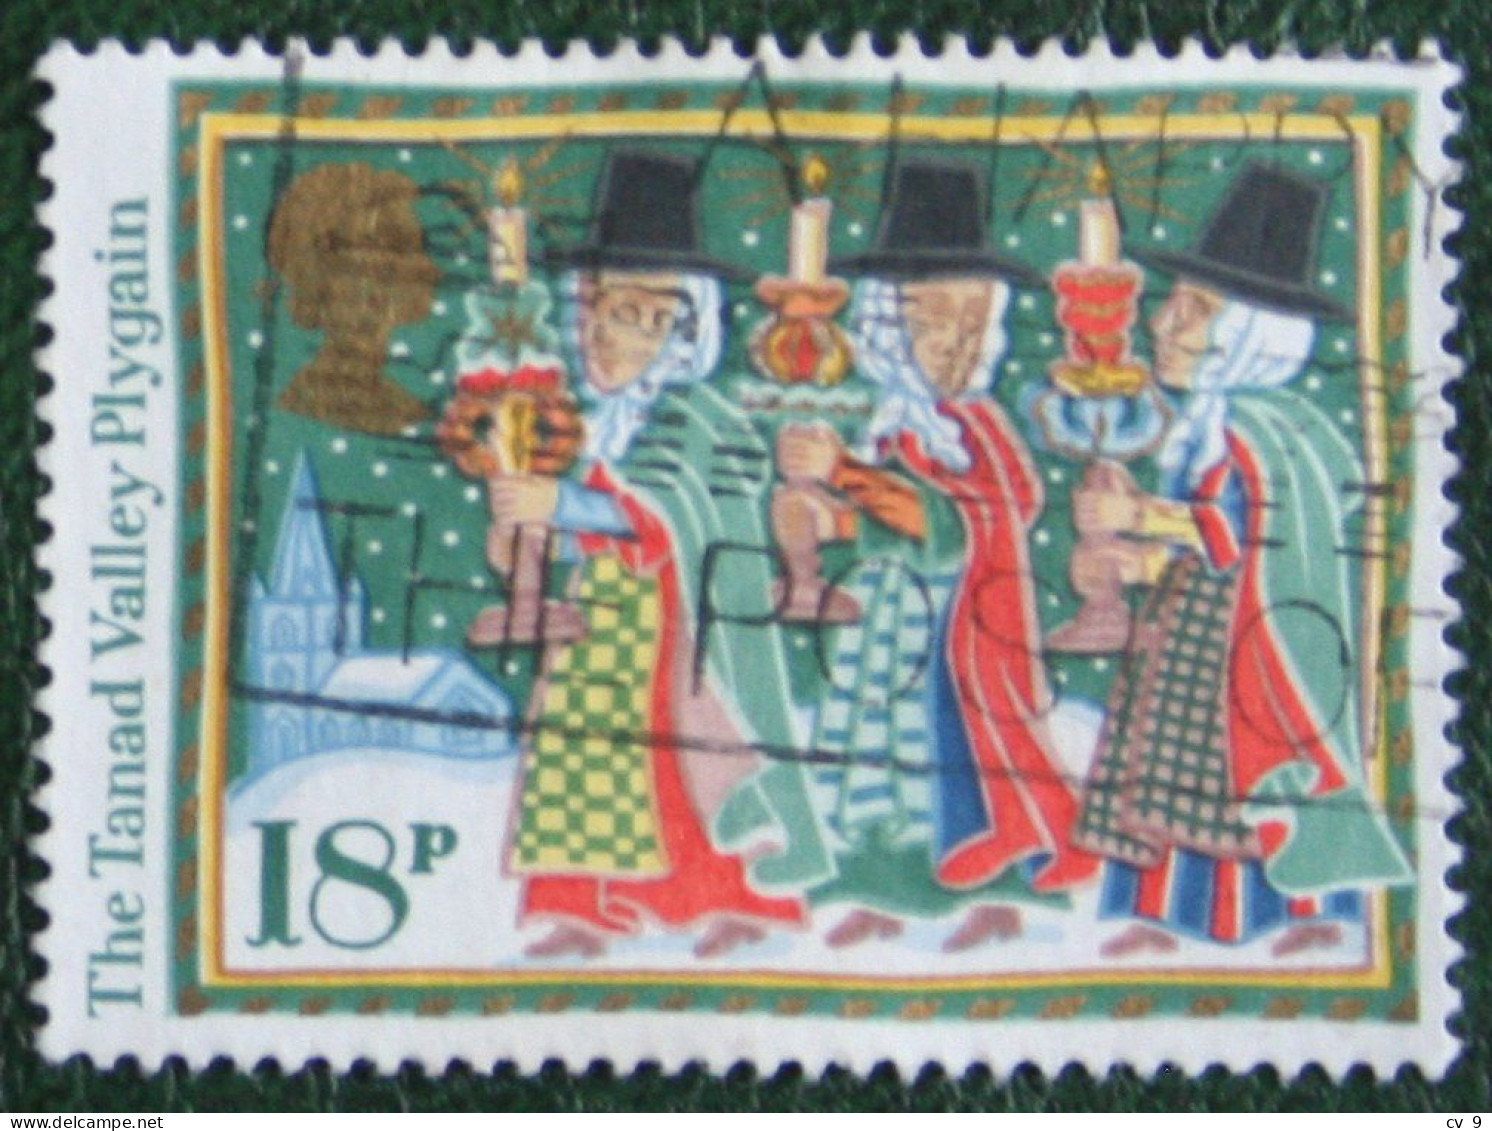 Natale Weihnachten Noel Christmas Mi 1092 1986 Used Gebruikt Oblitere ENGLAND GRANDE-BRETAGNE GB GREAT BRITAIN - Used Stamps